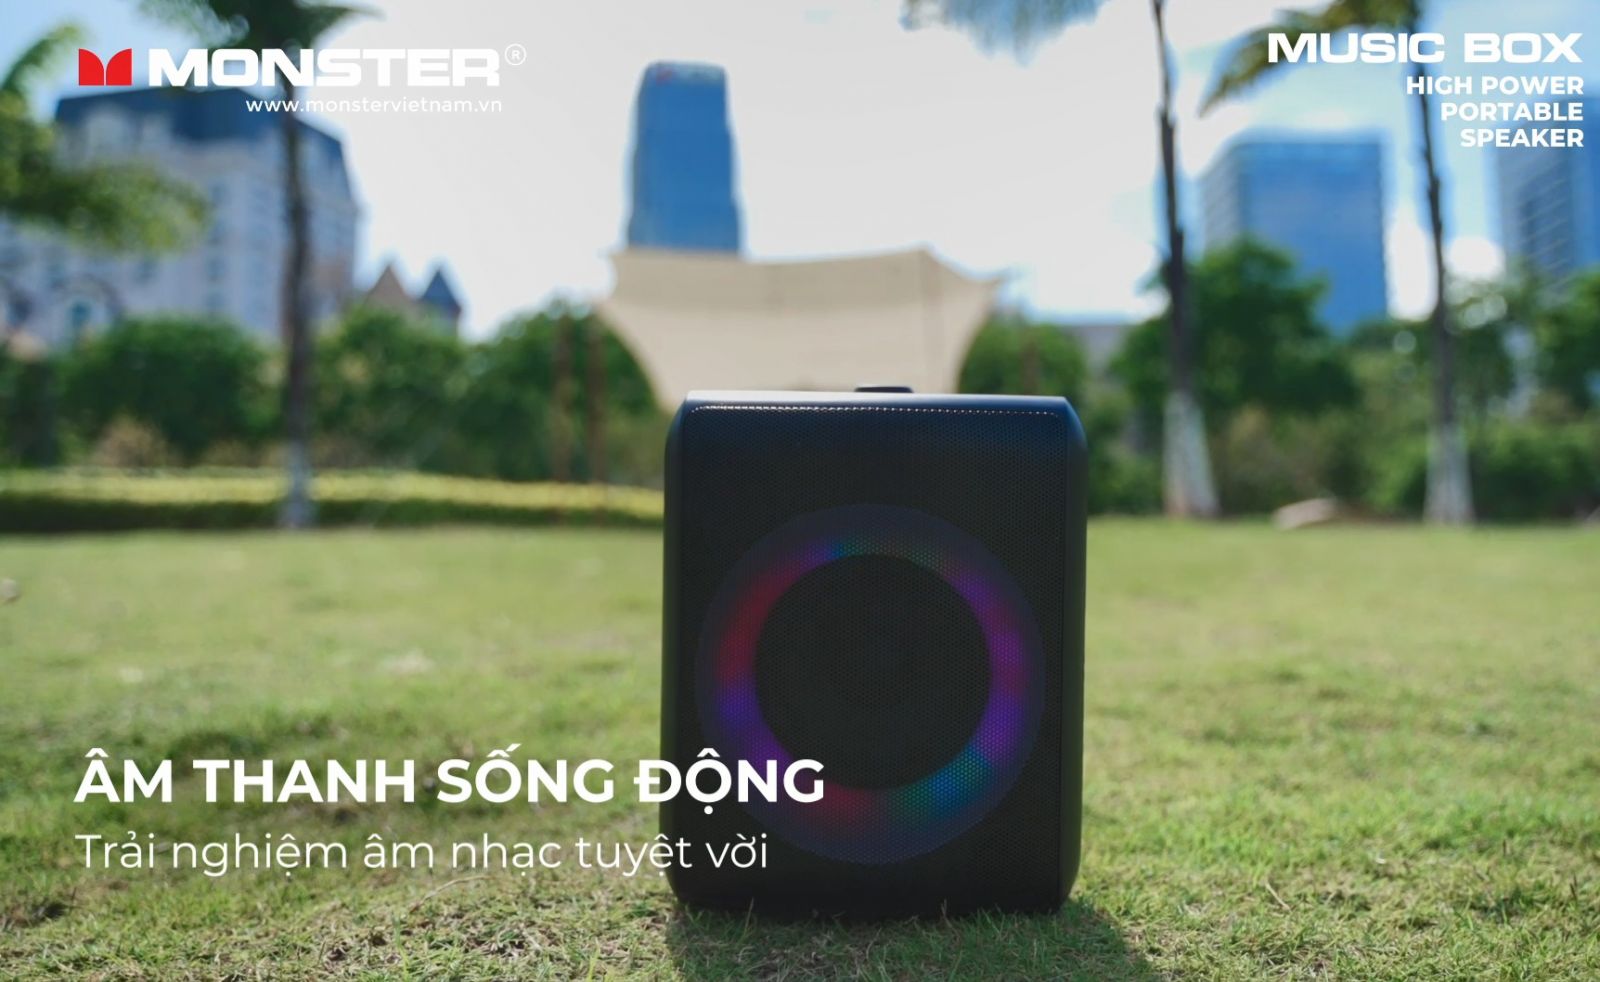 Loa di động chống nước Monster Musicbox | Anh Duy Audio